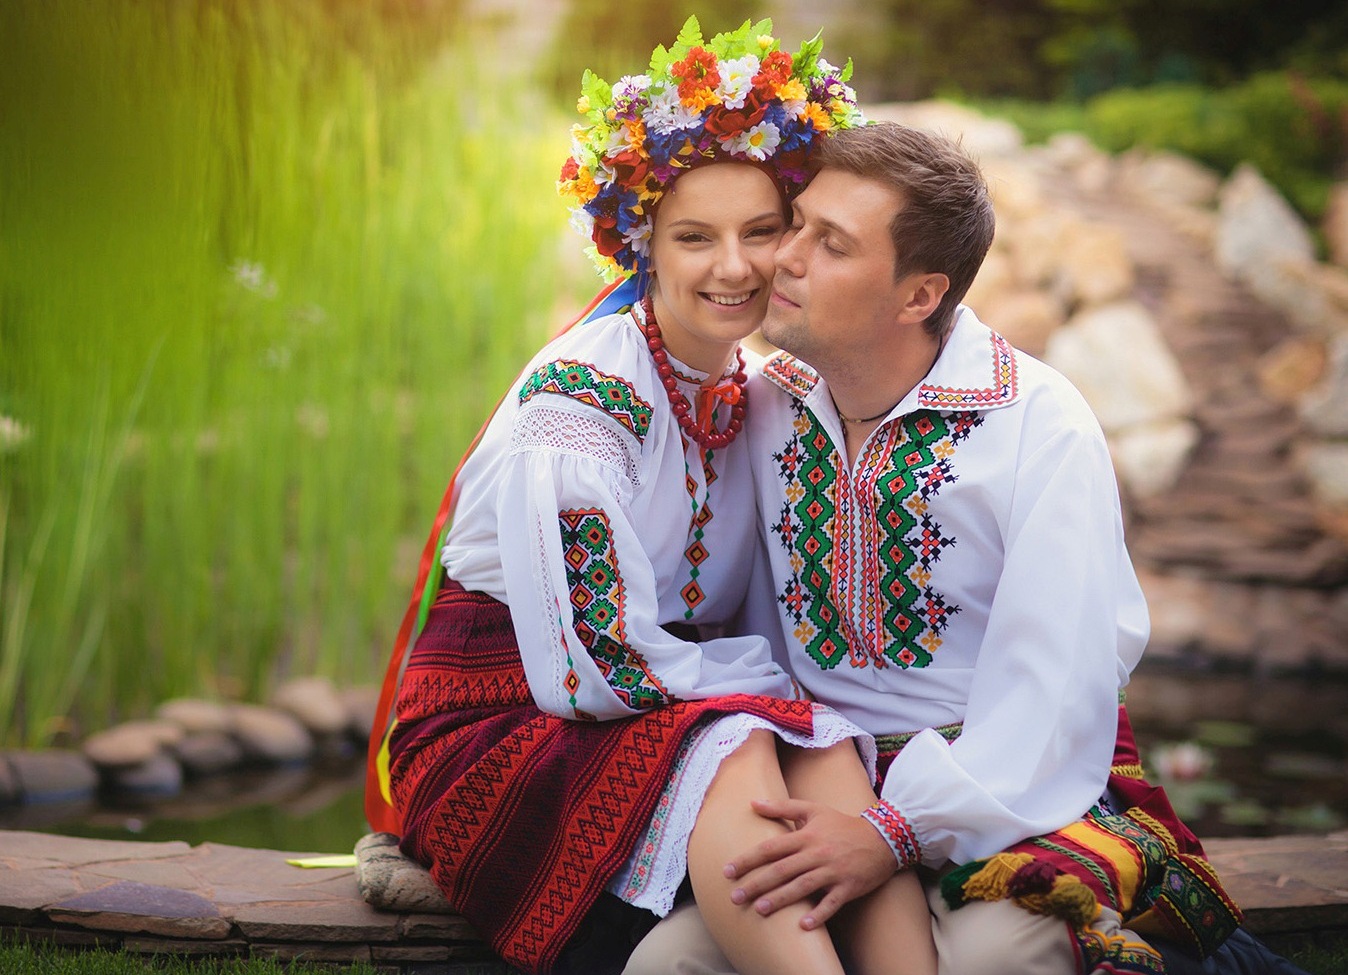 Украинцы название. Свадебный наряд украинцев. Мужчина и женщина славяне. Парень и девушка в русских народных костюмах.